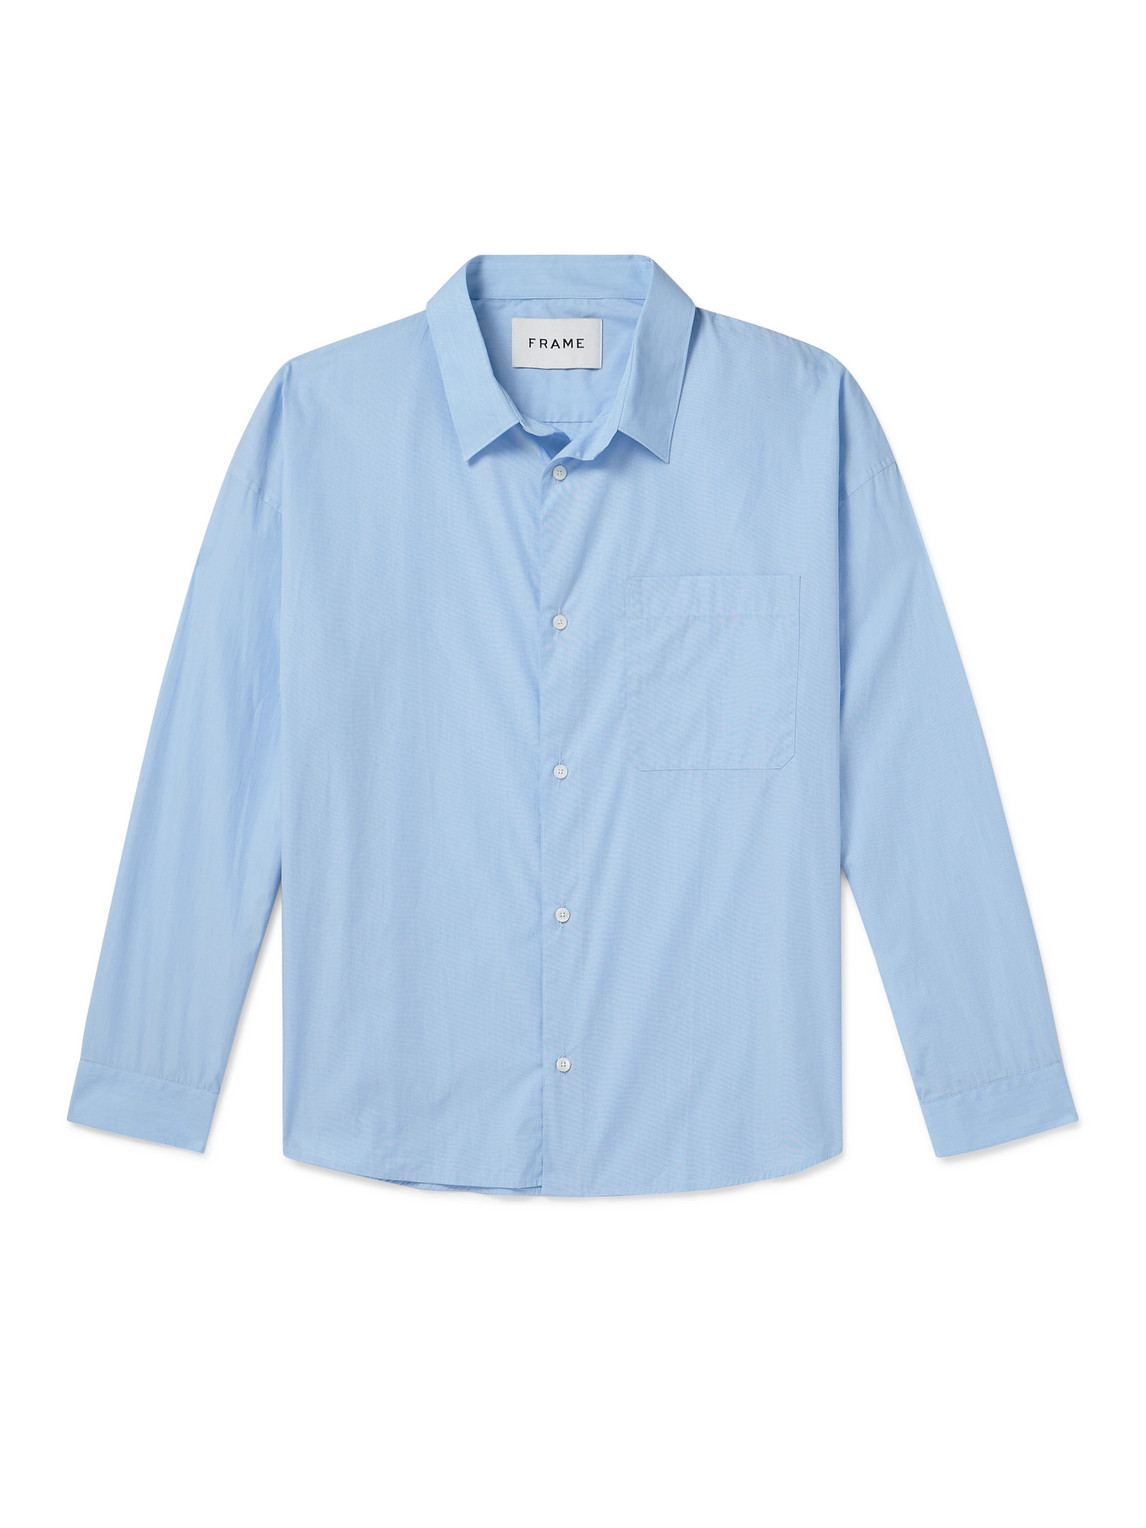 FRAME - Cotton Shirt - Men - Blue - L von FRAME